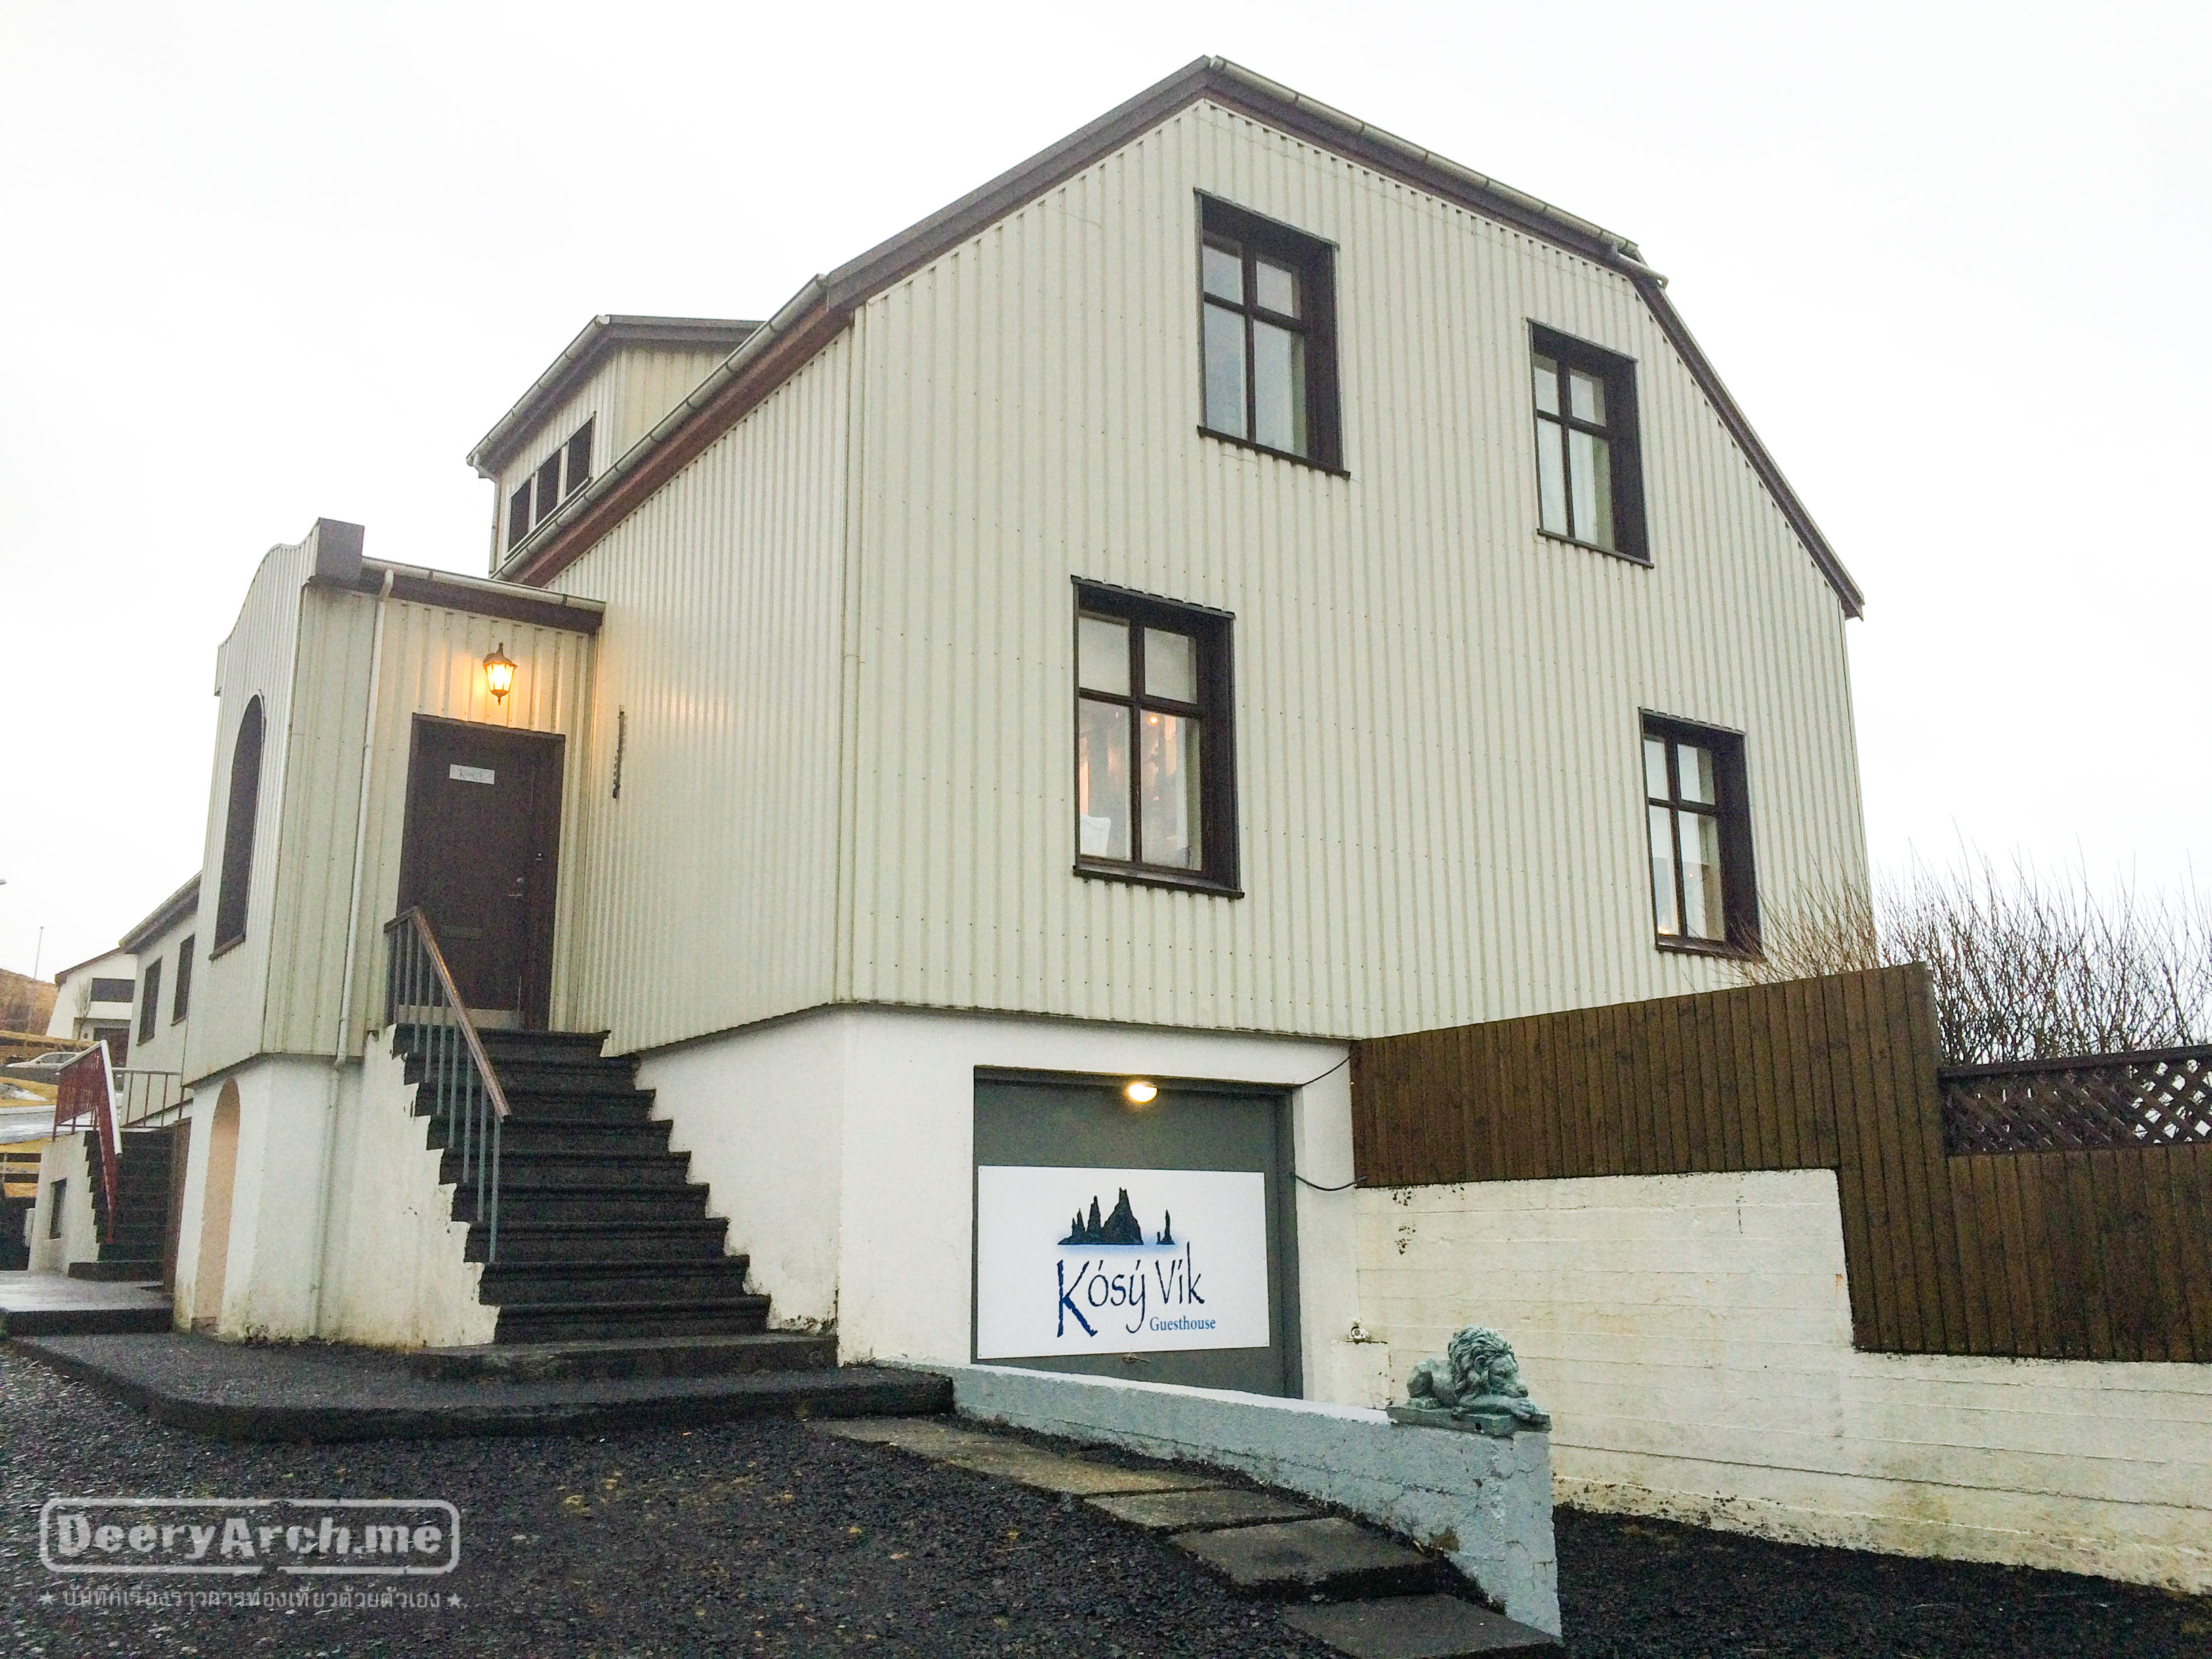 รีวิวที่พัก Iceland, Kosy Vik Guesthouse ที่พักอบอุ่นในเมือง Vik